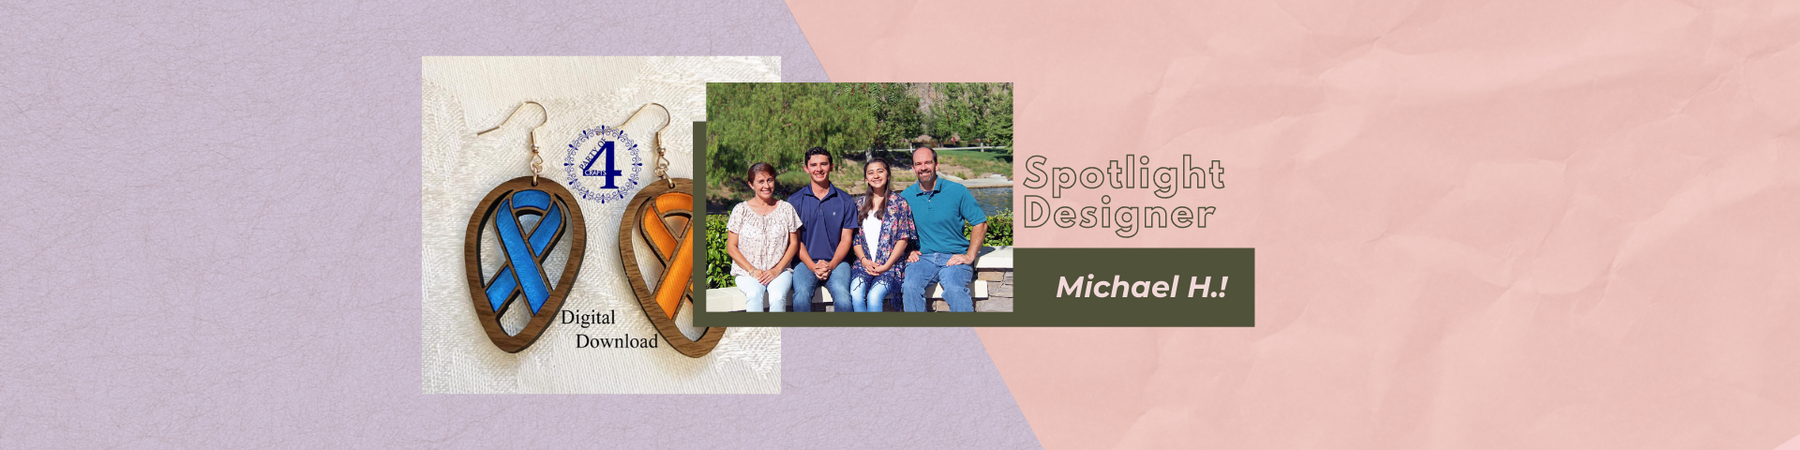 Spotlight Designer! Michael H.